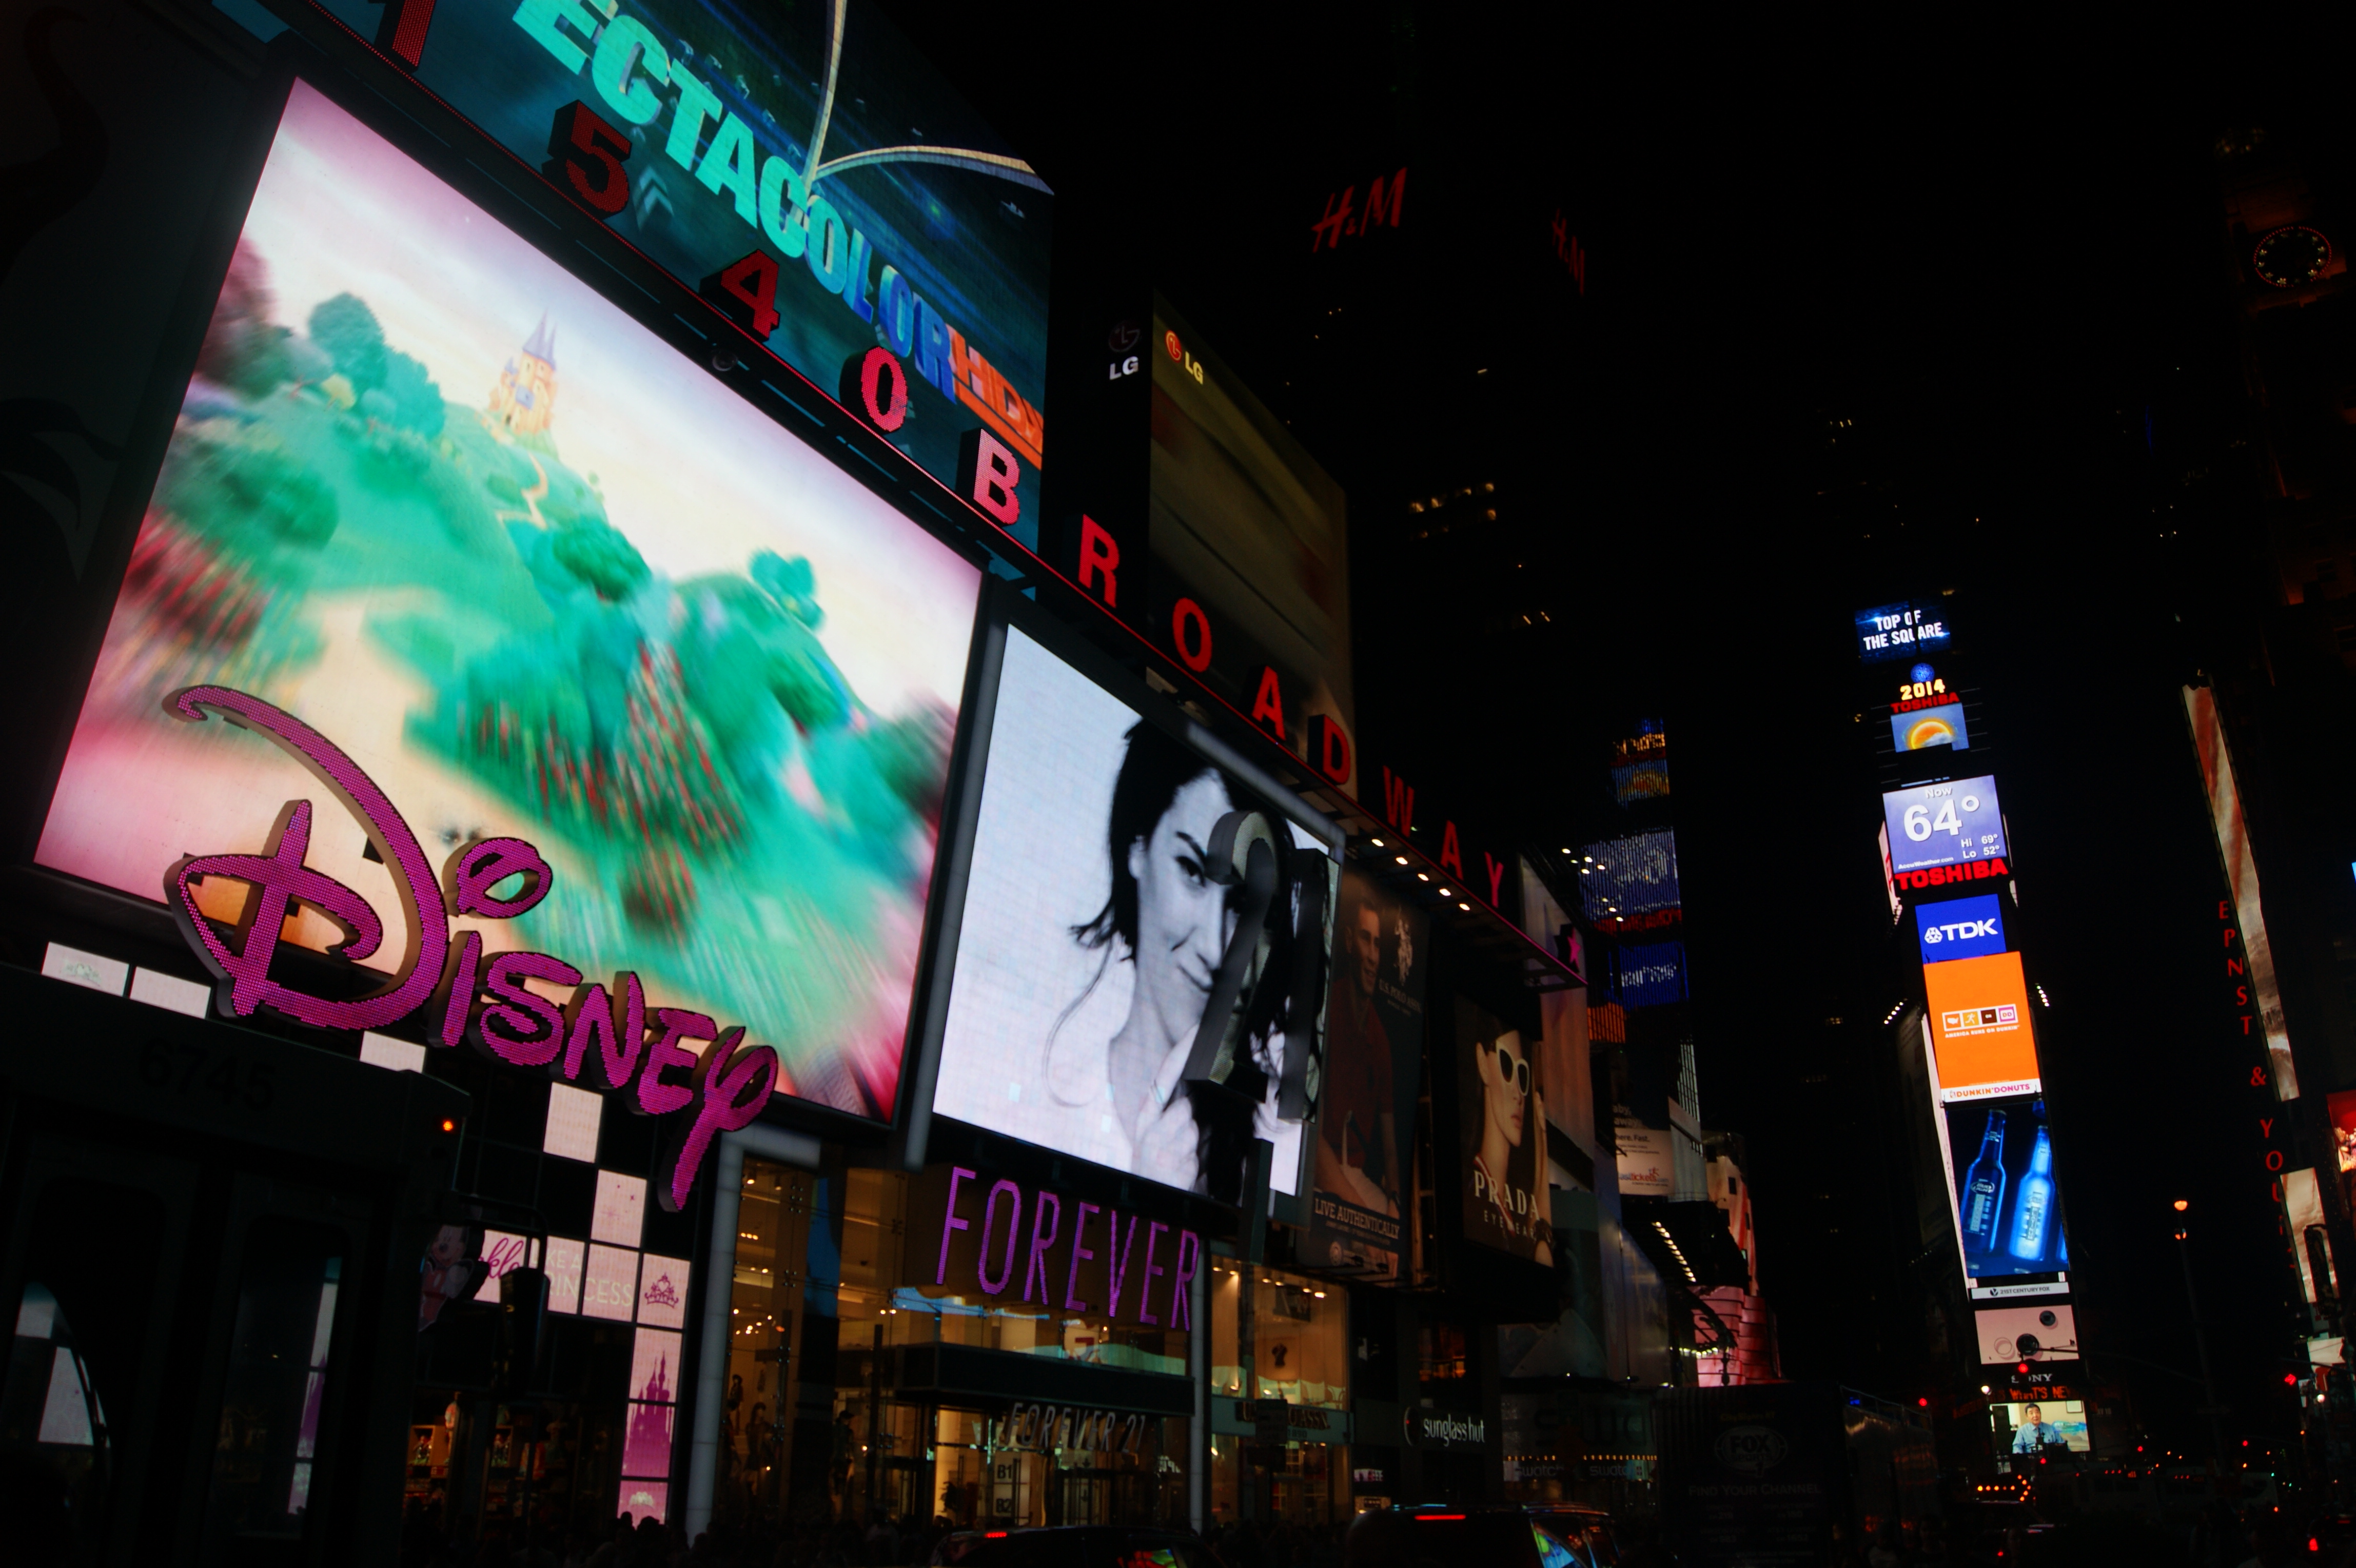 Nova Iorque – Times Square